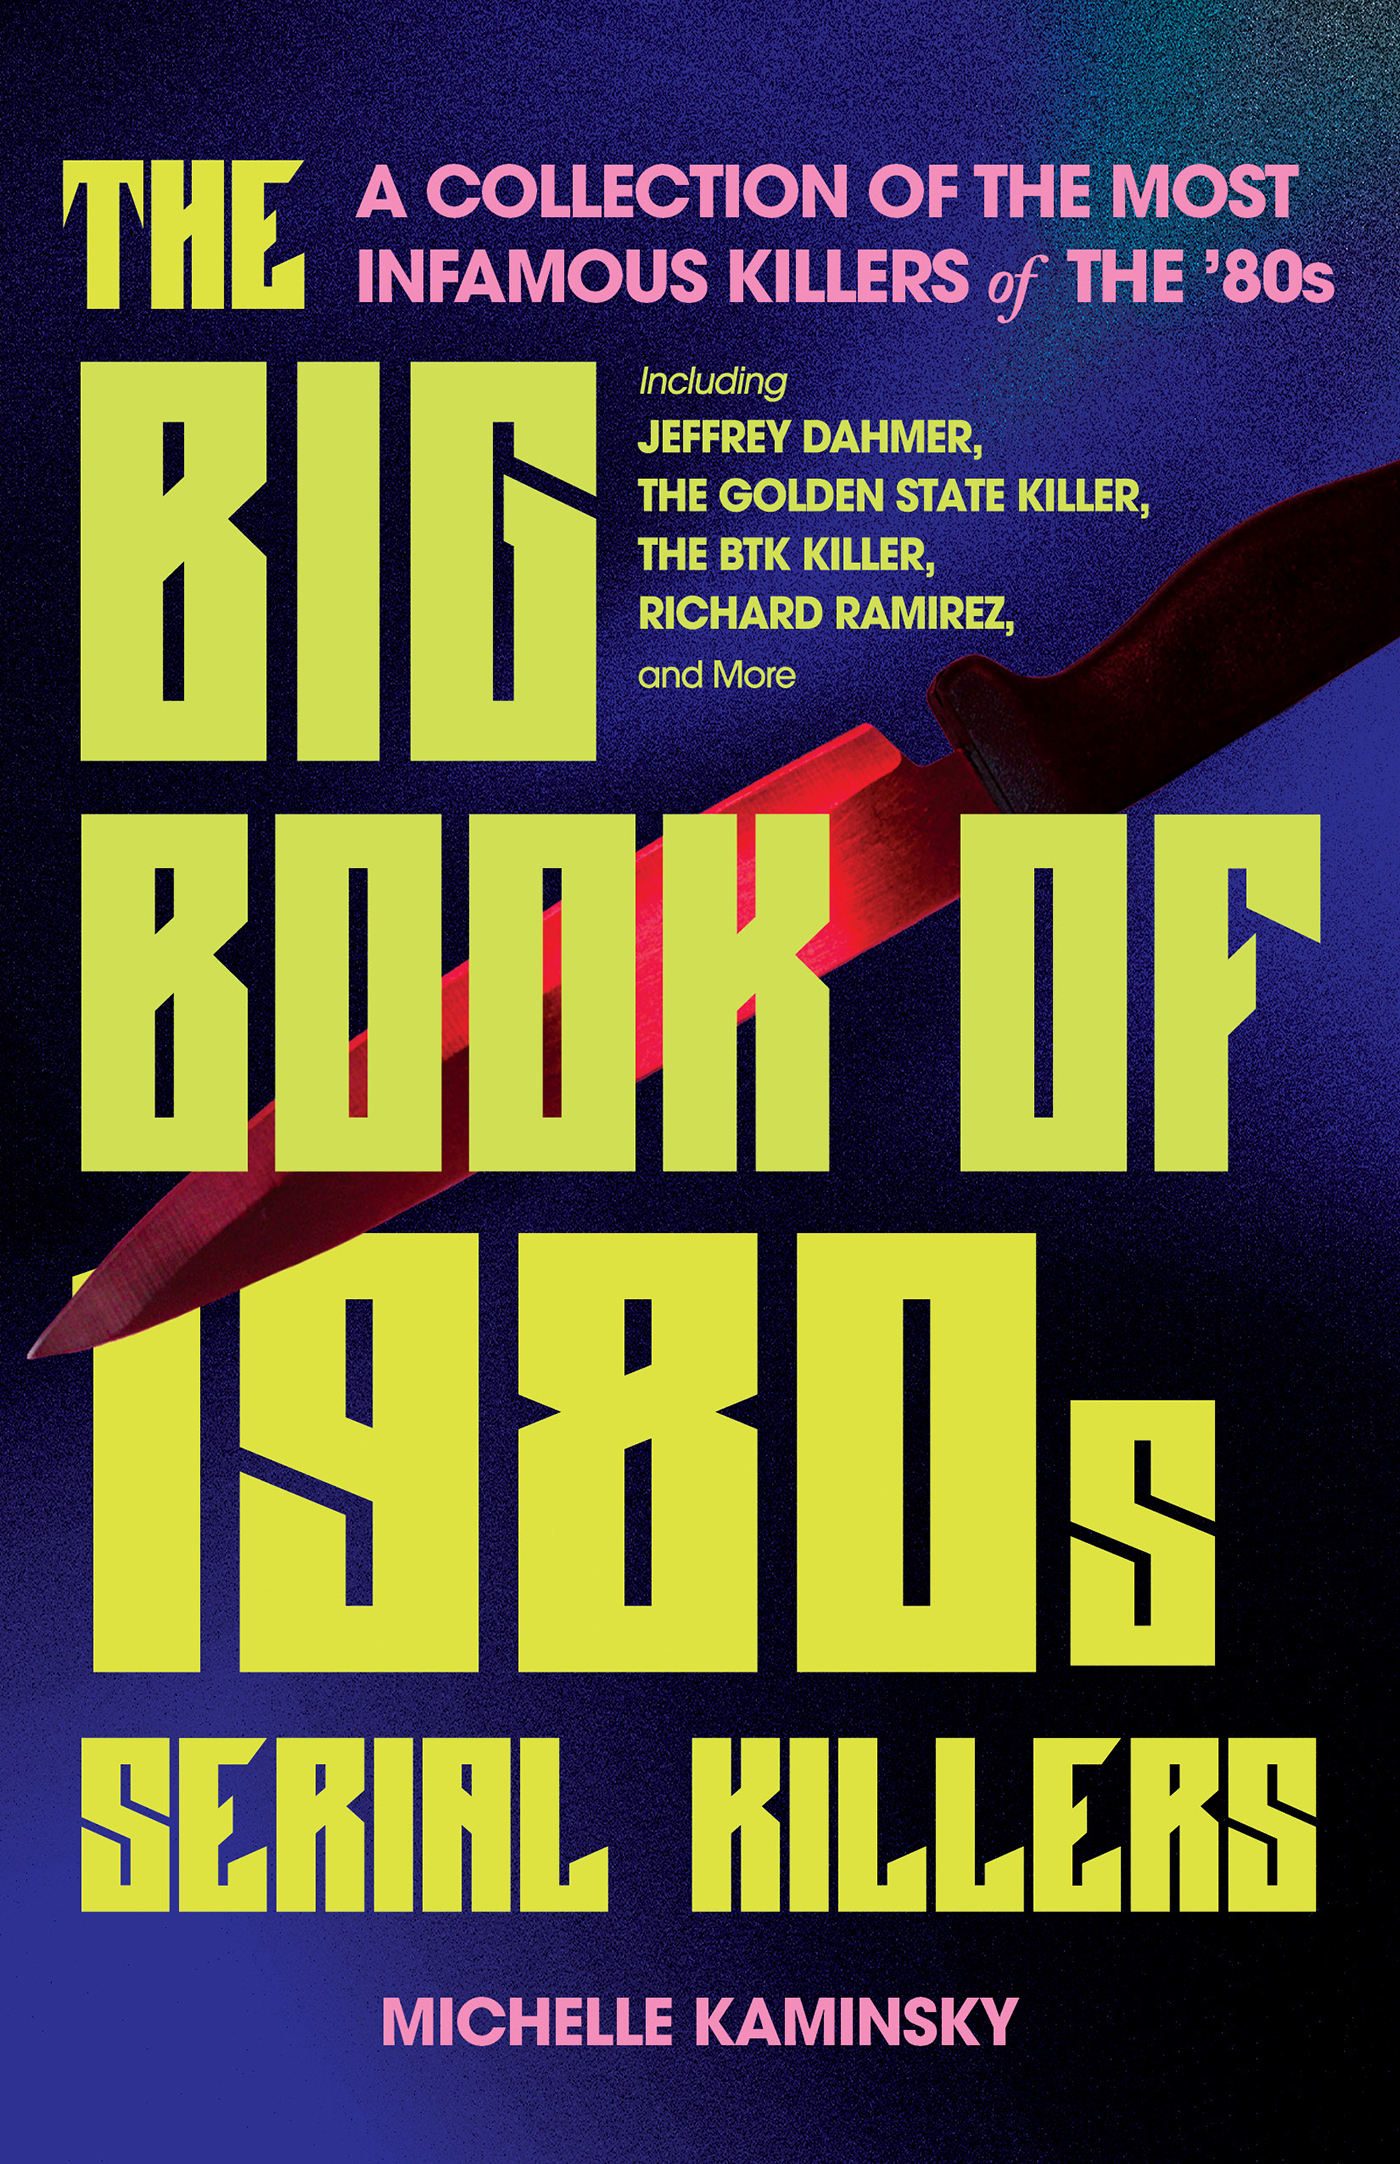 Big Book of 1980s Serial Killers